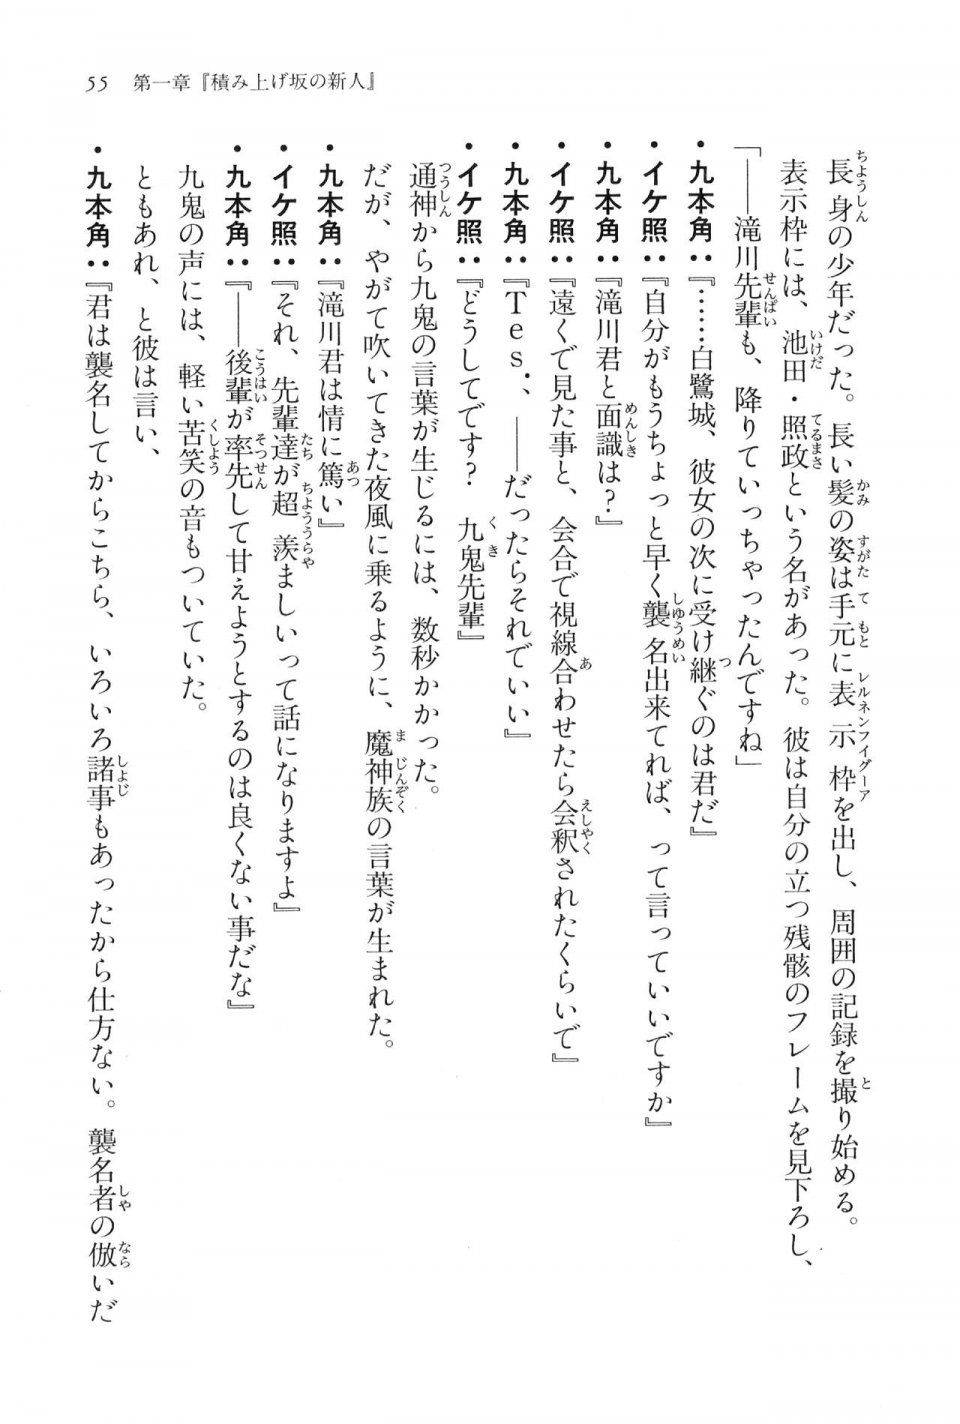 Kyoukai Senjou no Horizon LN Vol 16(7A) - Photo #55